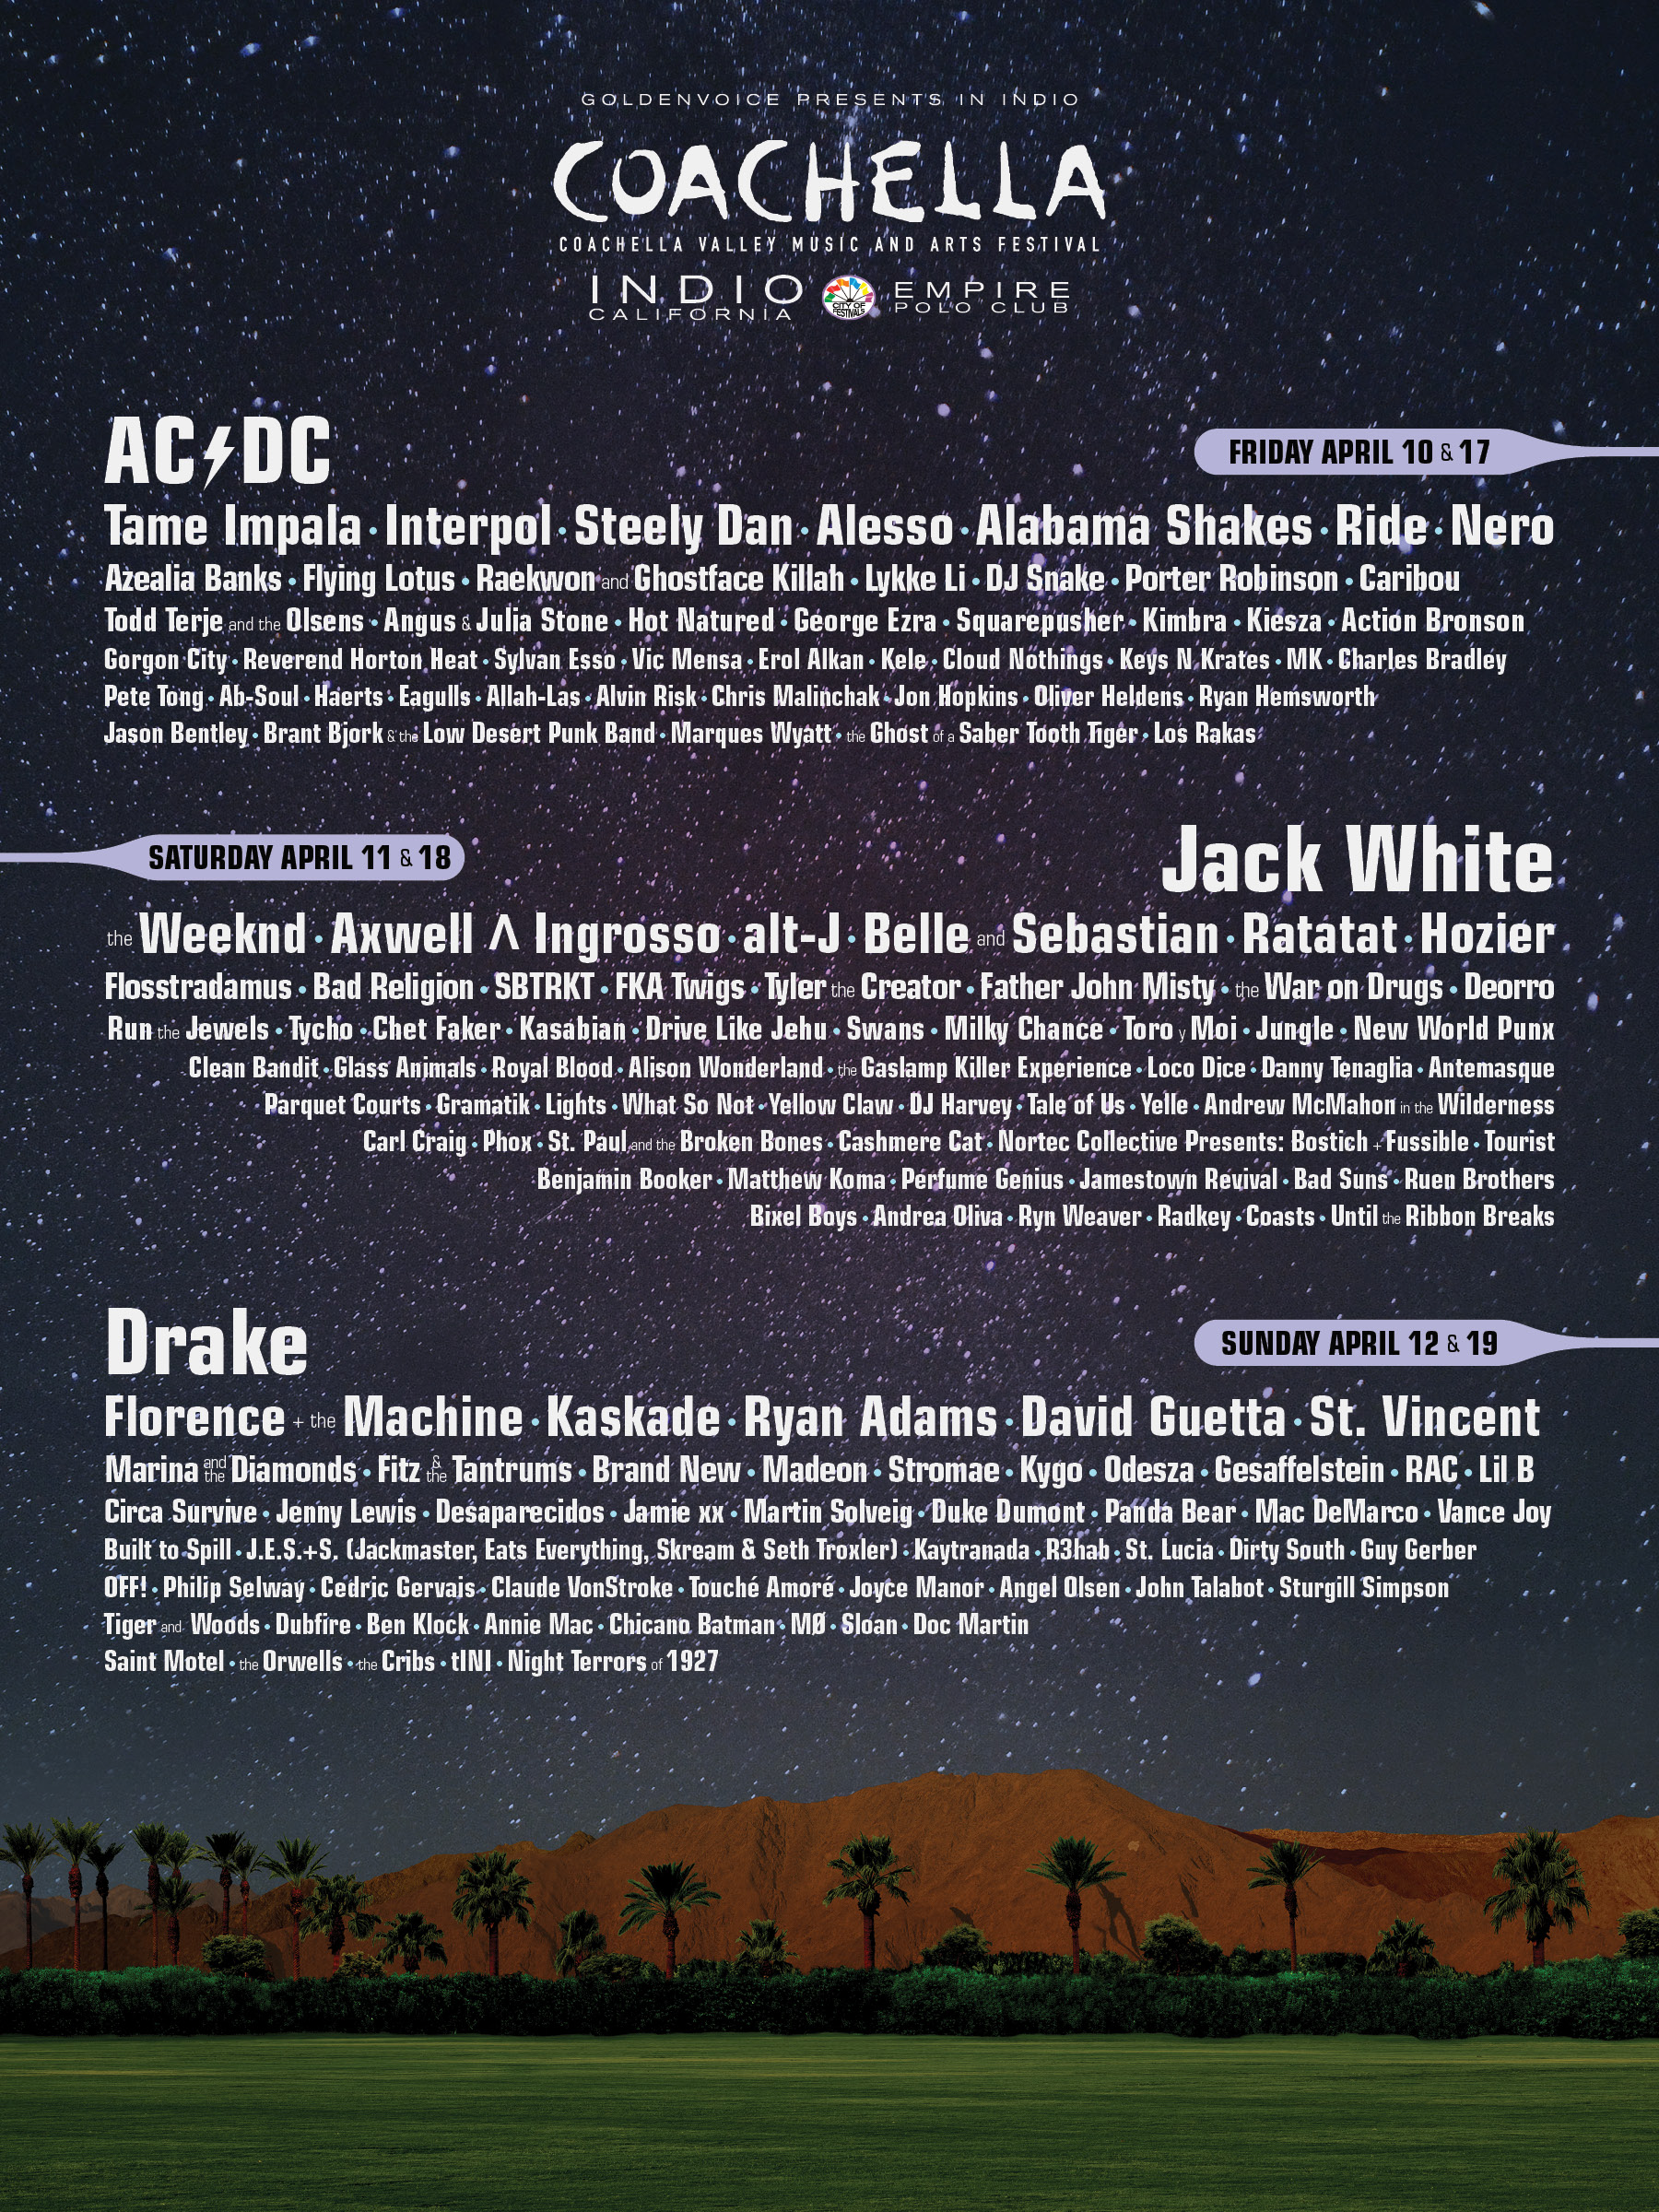 2015 Coachella Festival -- April 10 - 12 & April 17 - 19 (Empire Polo Club, Indio)